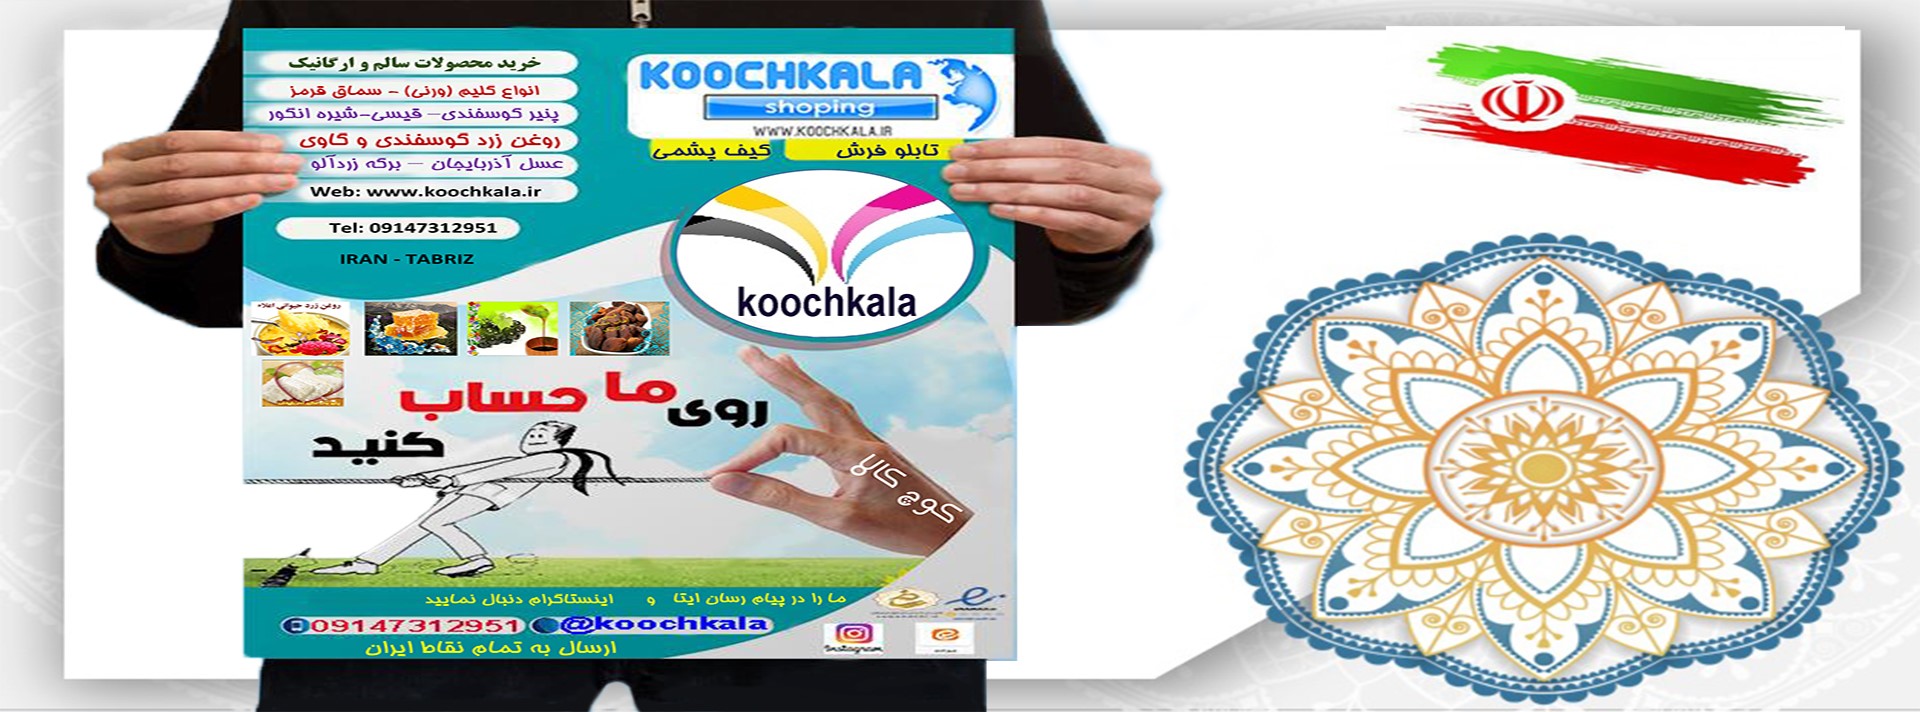 koochkala1402